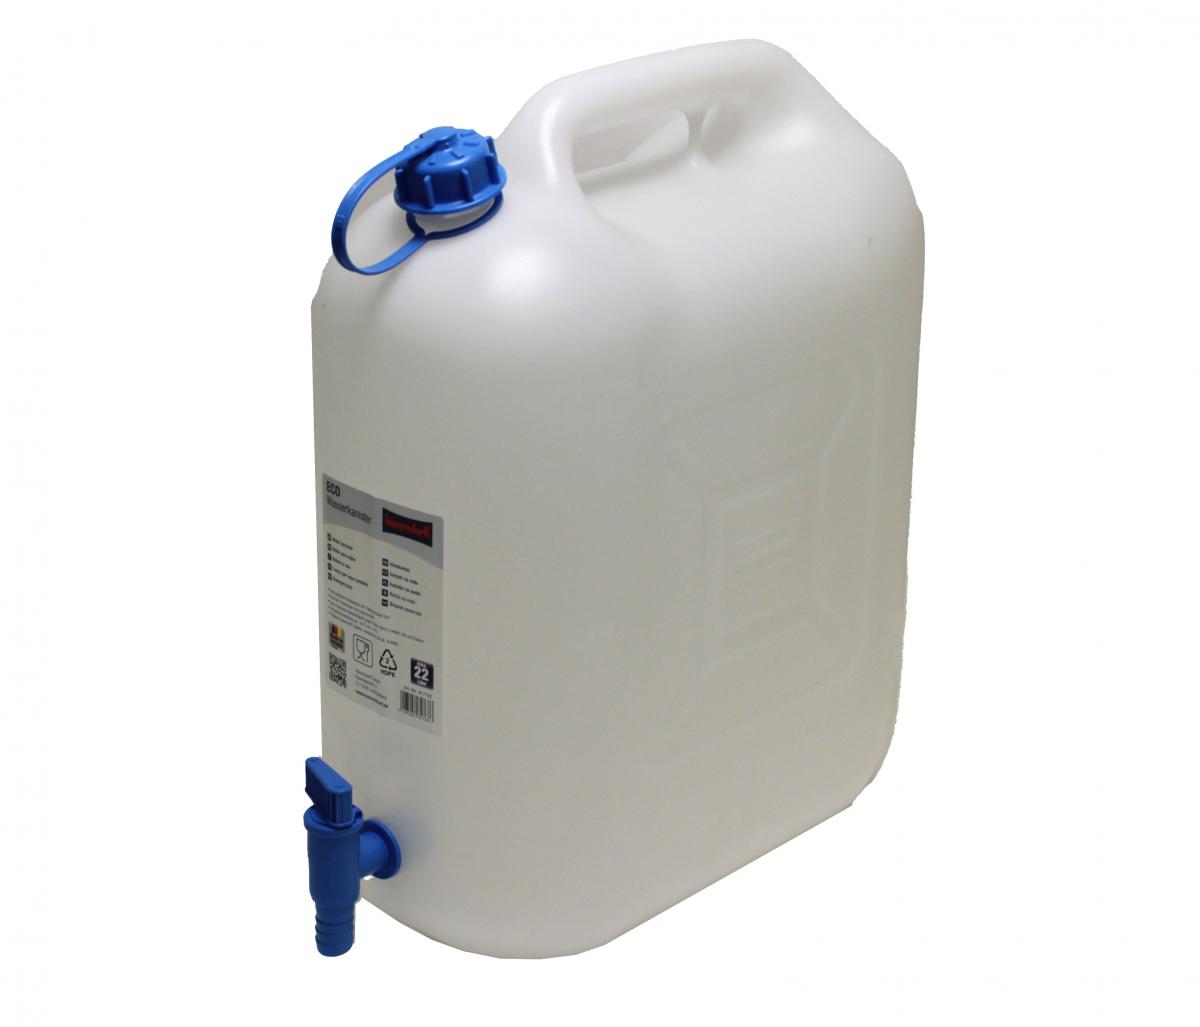 Wasserkanister 22 Liter natur mit Ablasshahn